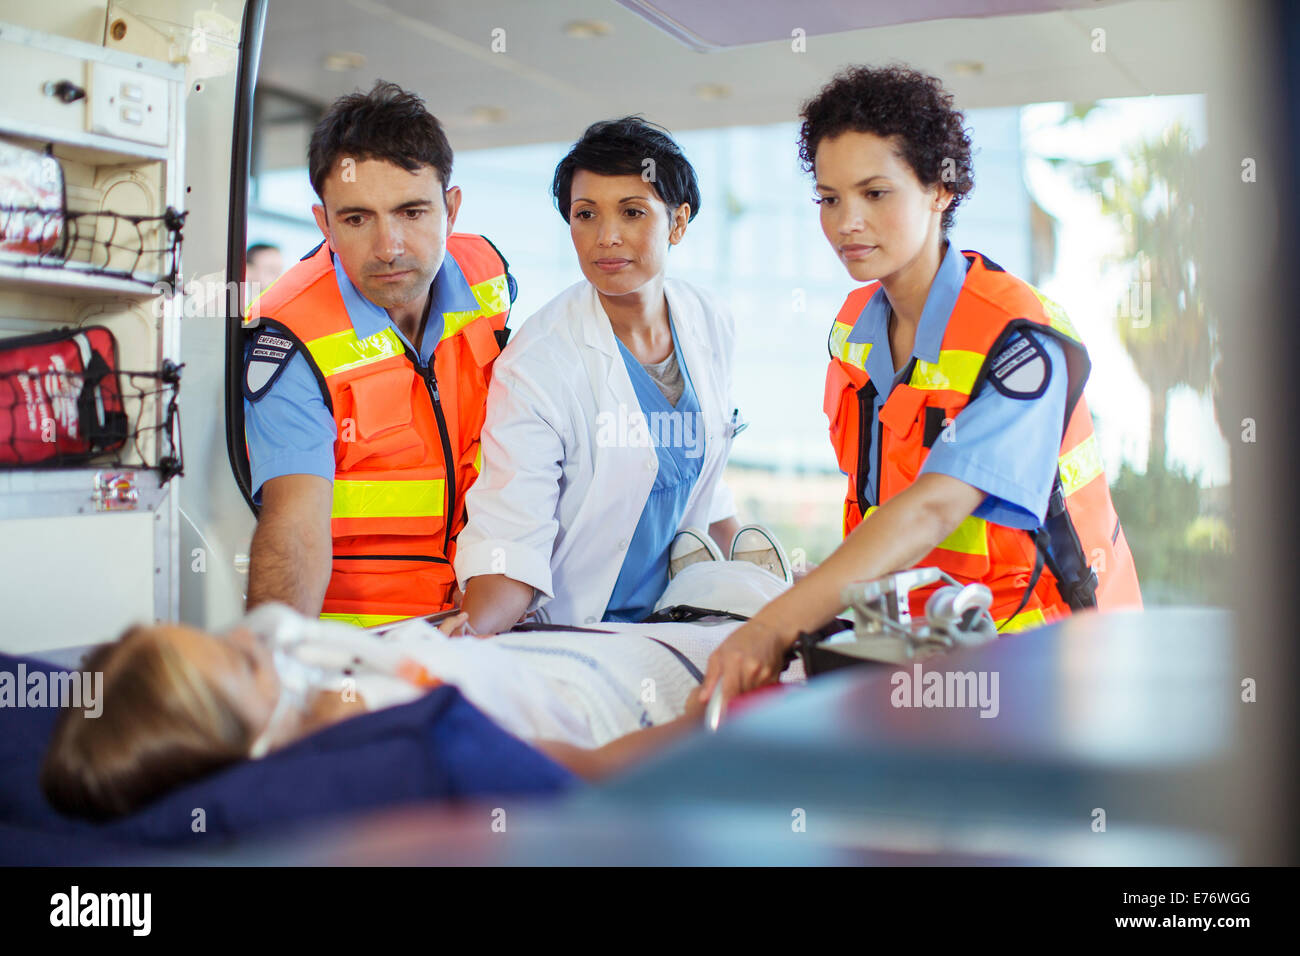 Médecin et paramédicaux examining patient in ambulance Banque D'Images